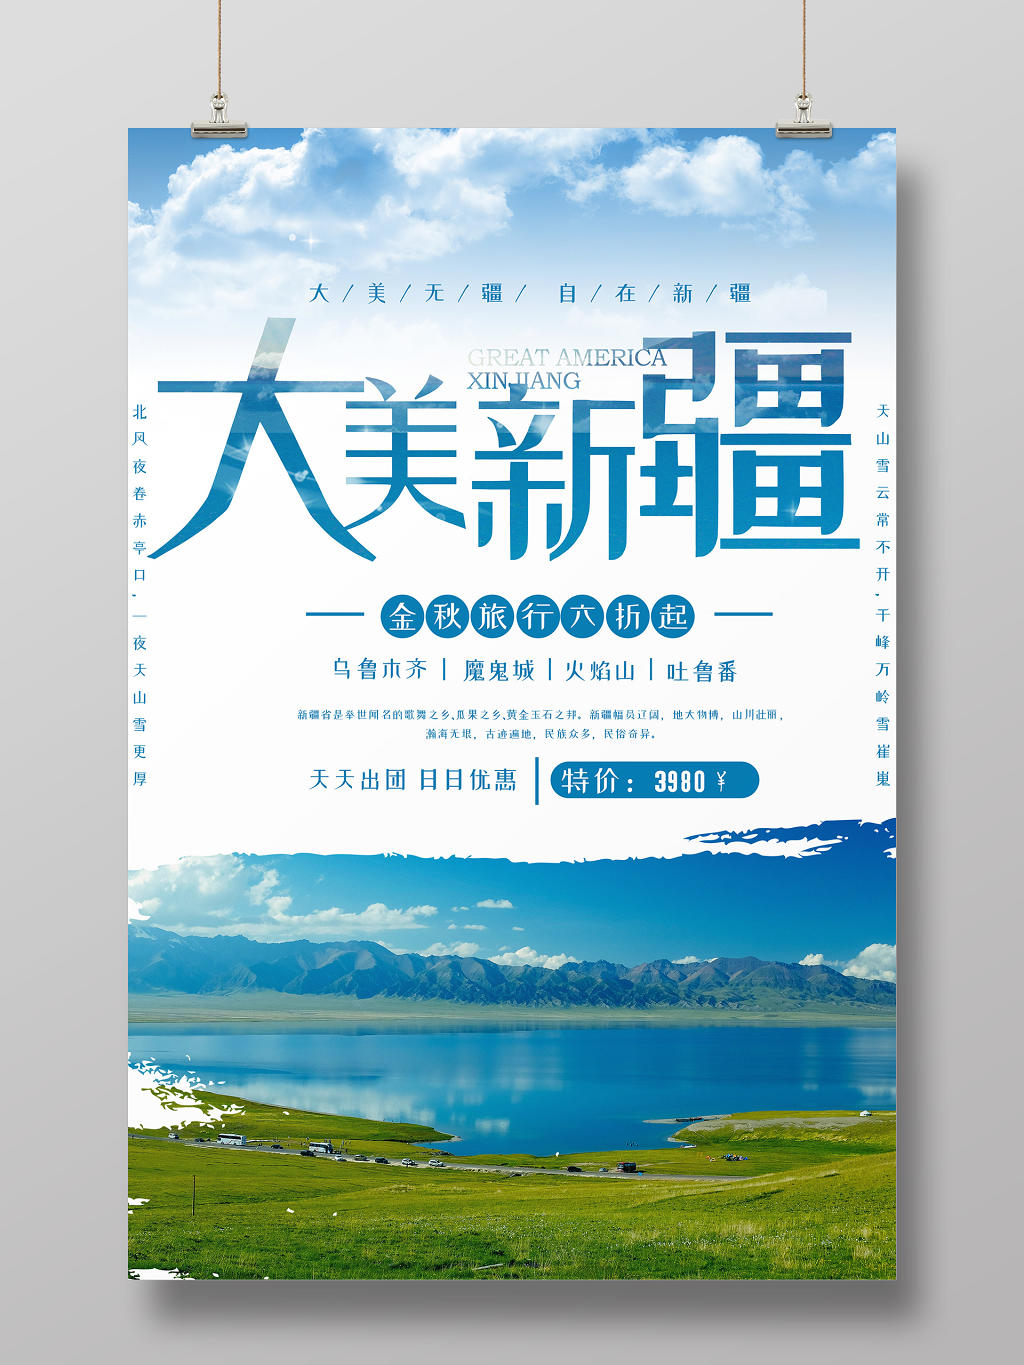 简约大美新疆风景旅游出游宣传促销海报